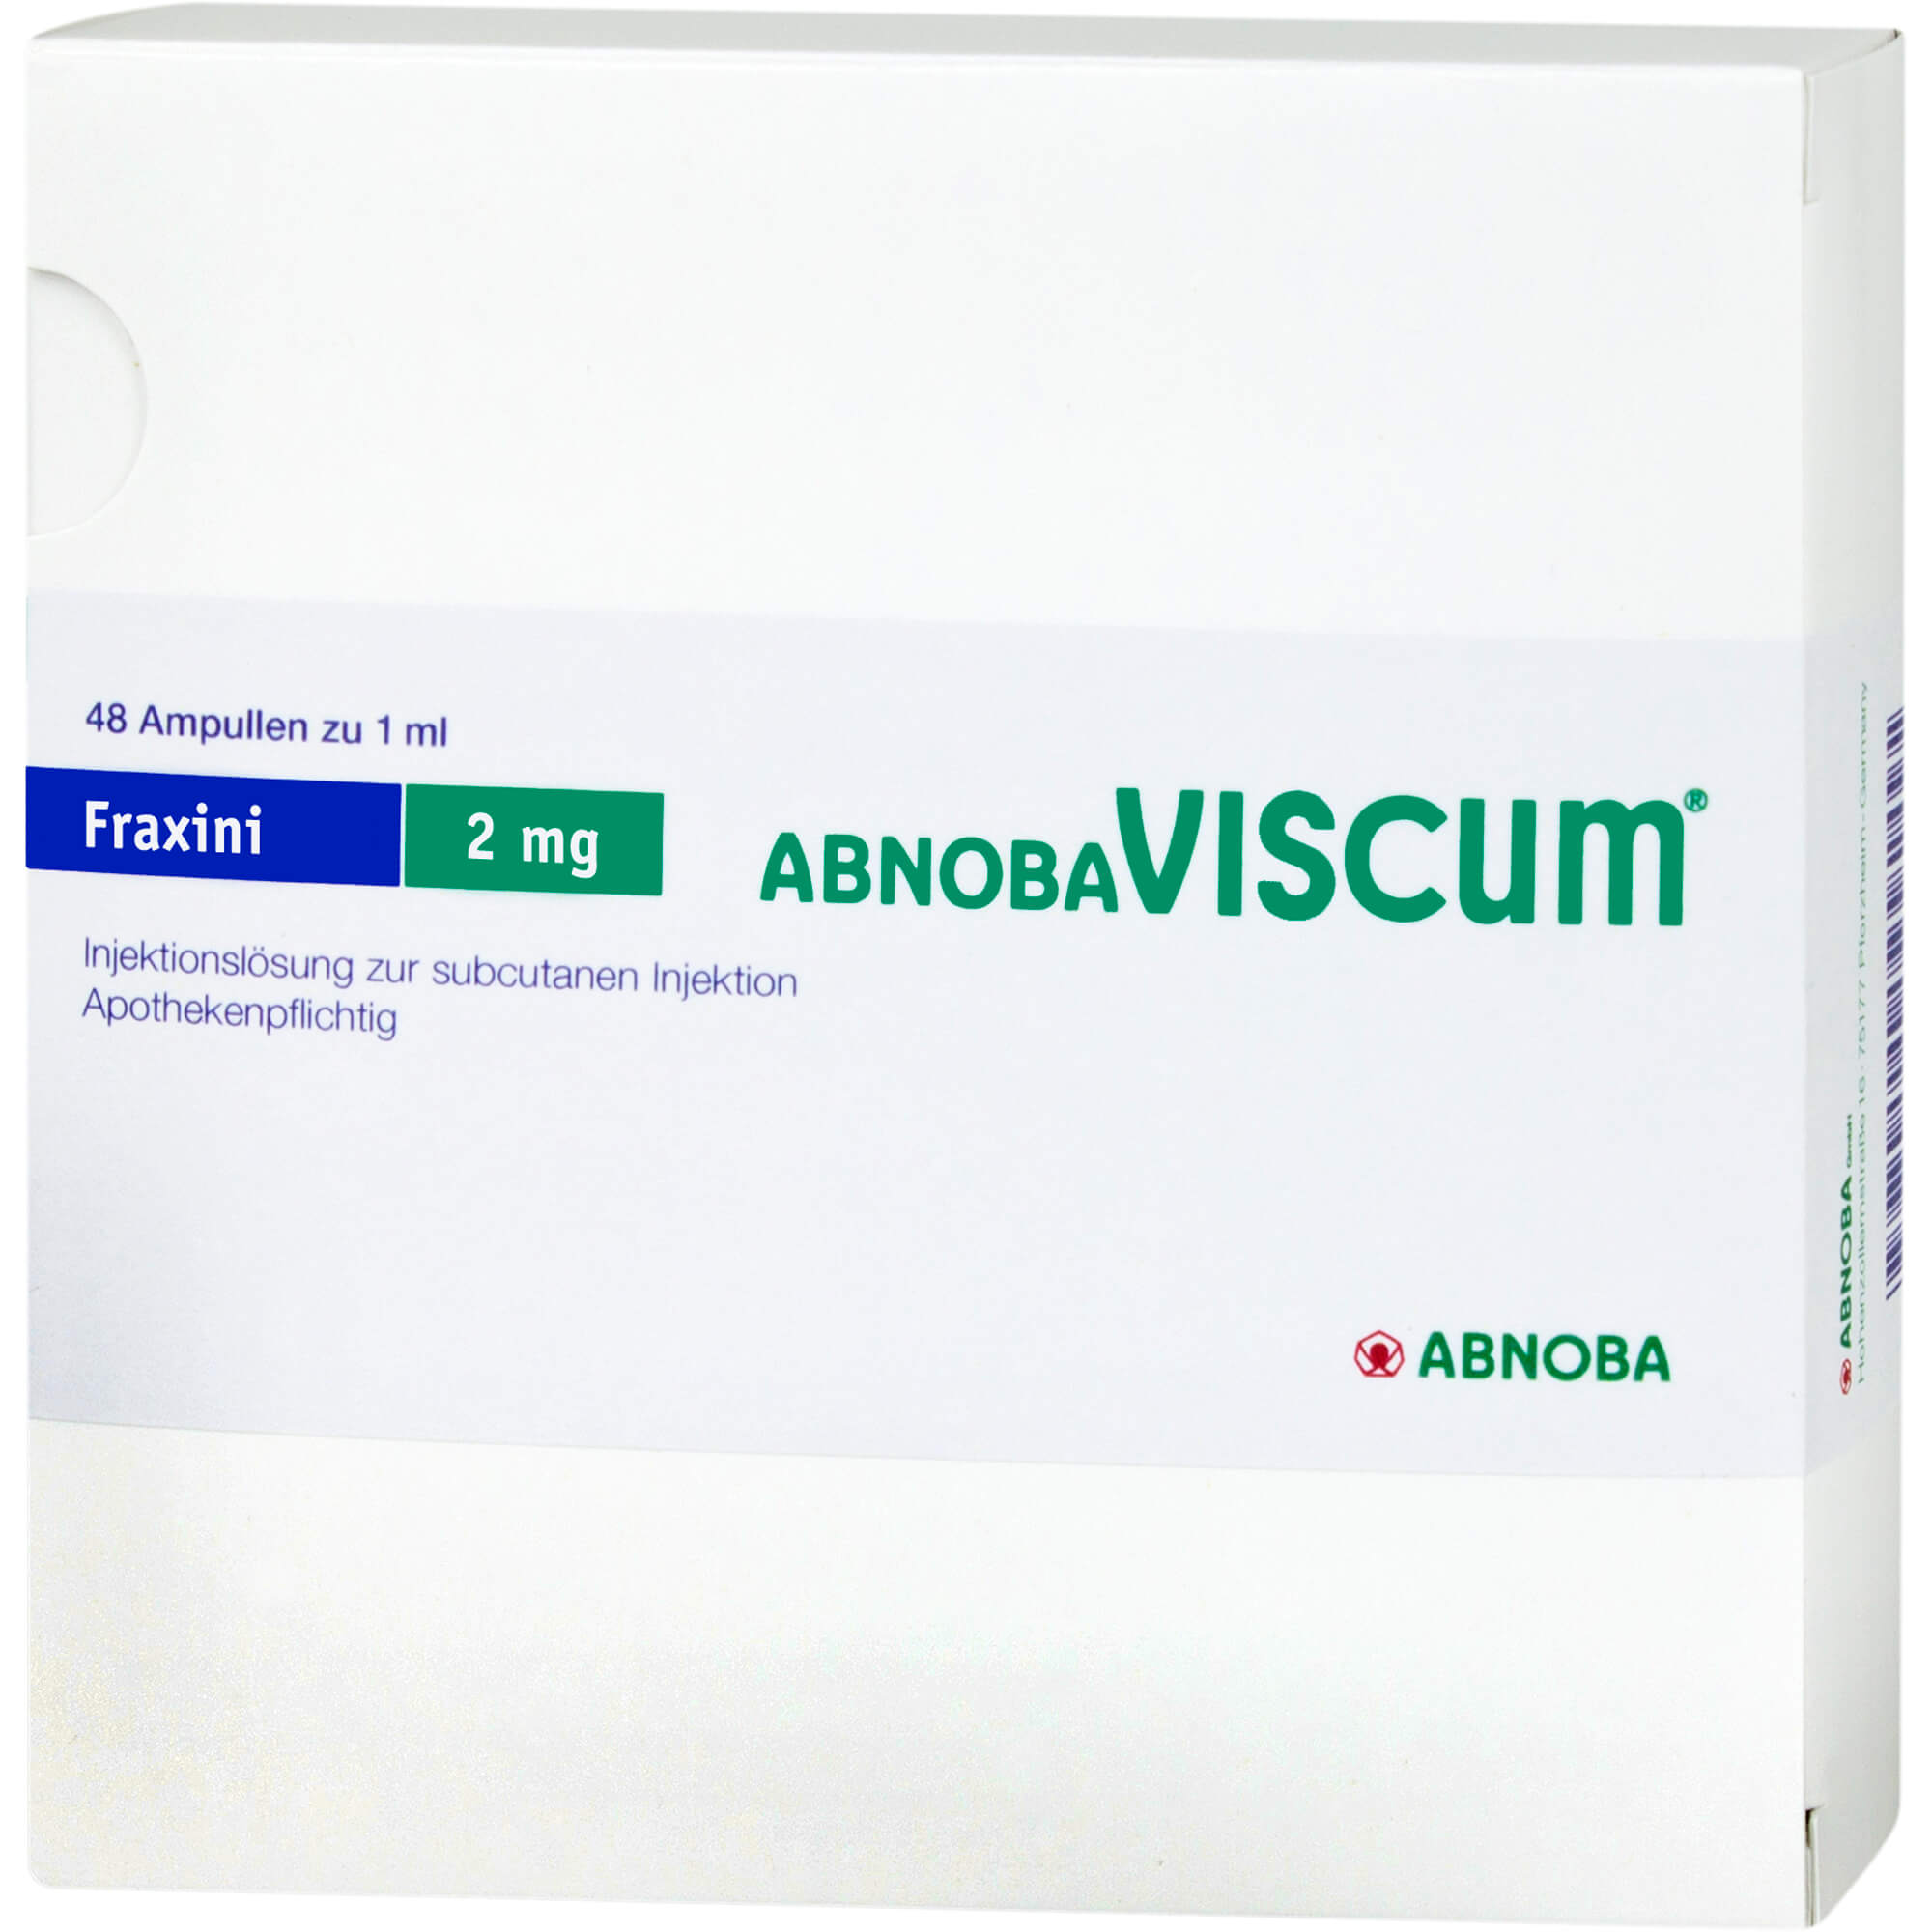 ABNOBAVISCUM Fraxini 2 mg Ampullen